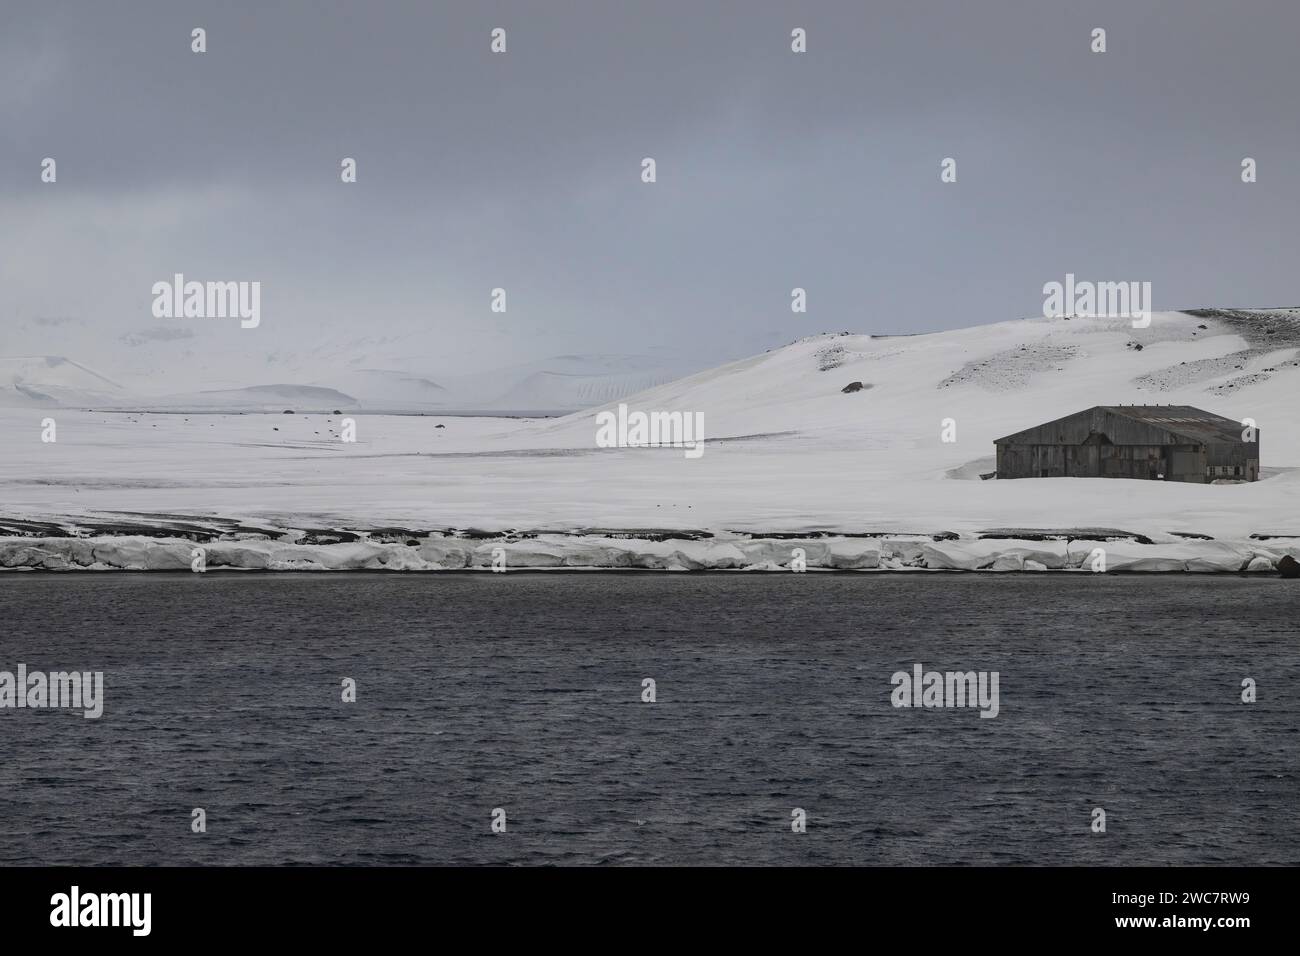 Isla de decepción, Islas Shetland del Sur, puerto natural seguro, en la caldera de un volcán activo, ruinas de una estación ballenera, remoto y aislado Foto de stock